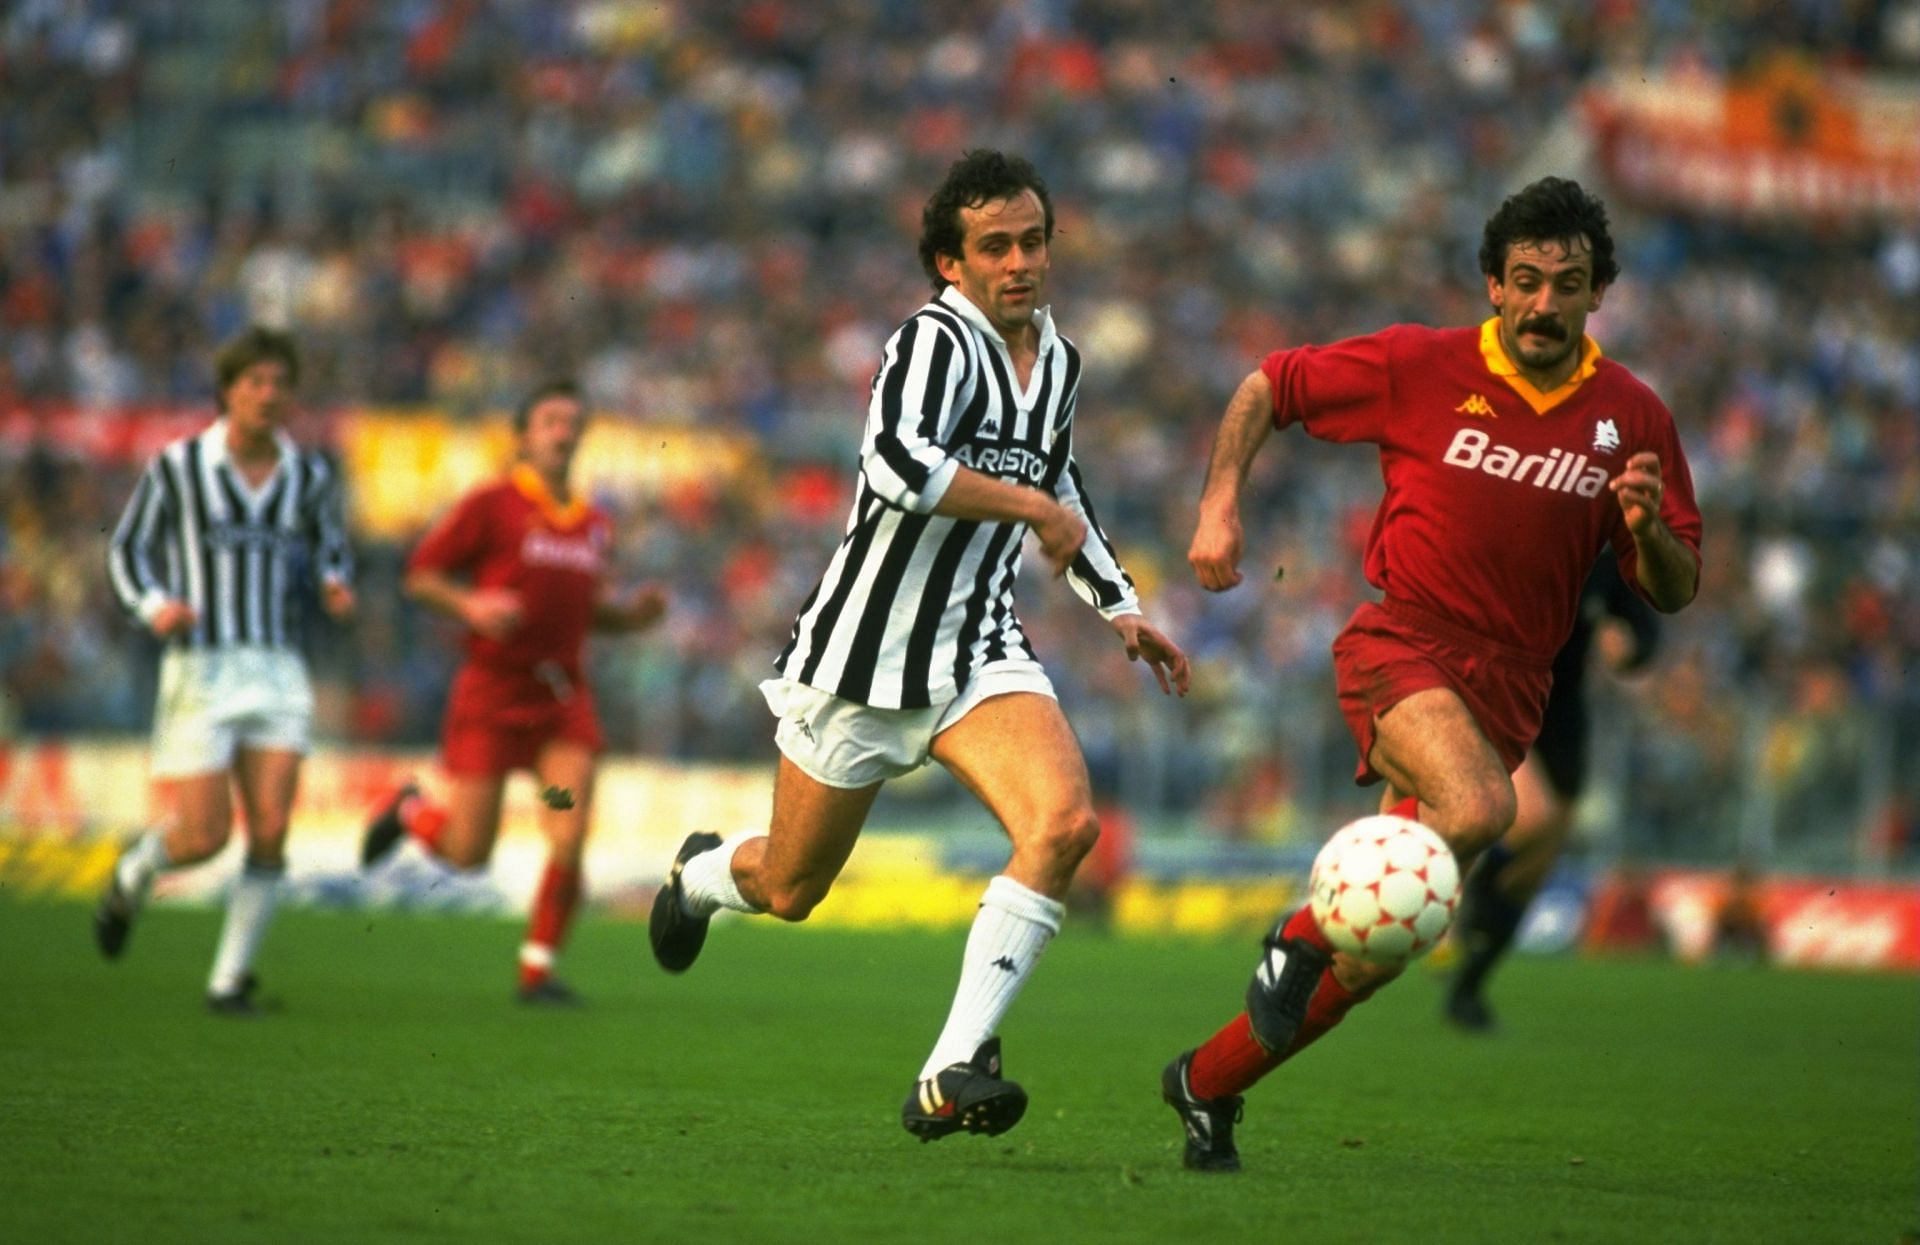 Michel Platini of Juventus and Emidio Oddi of Roma